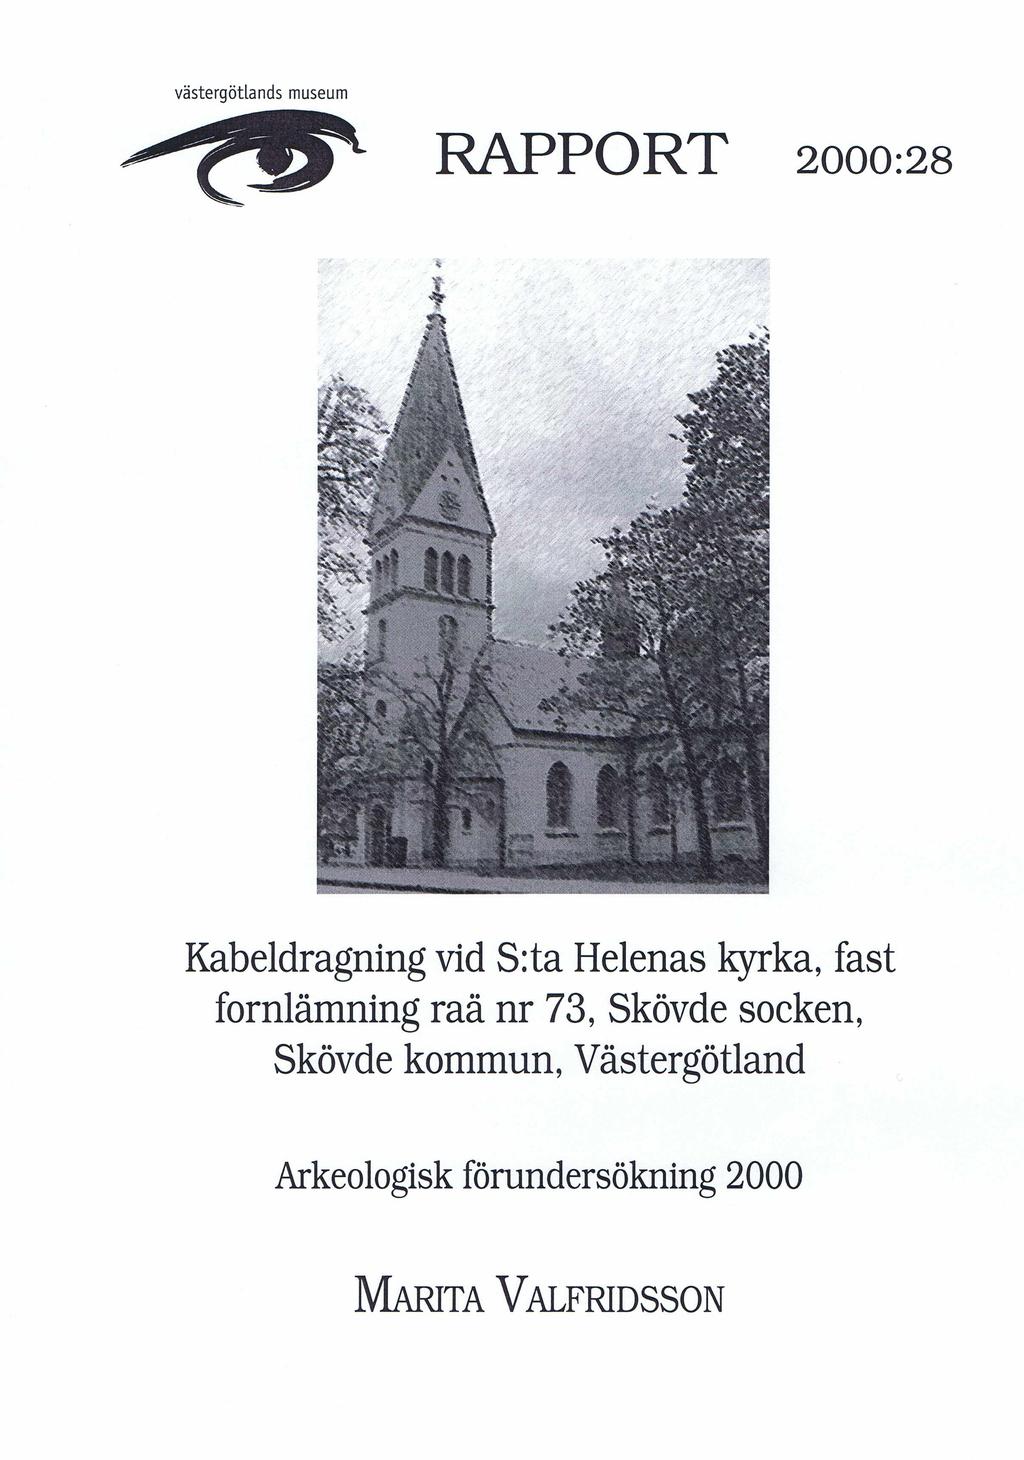 Västergötlands museum r a p p o r t 2000:28 Kabeldragning vid S:ta Helenas kyrka, fast fornlämning raä